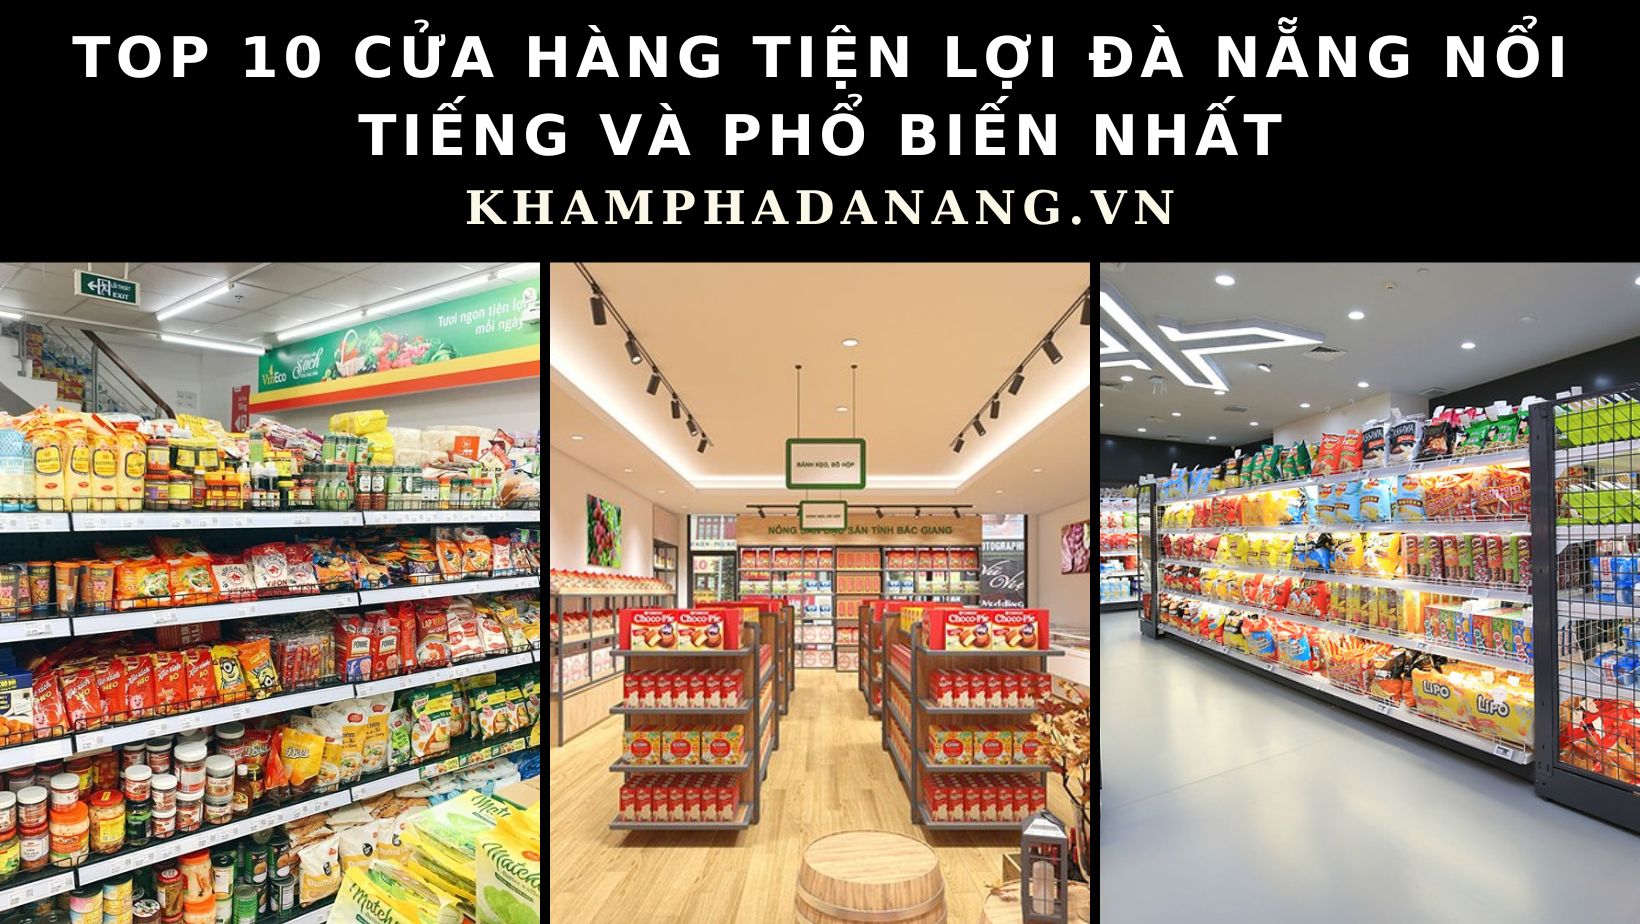 Top 10 cửa hàng tiện lợi Đà Nẵng nổi tiếng và phổ biến nhất